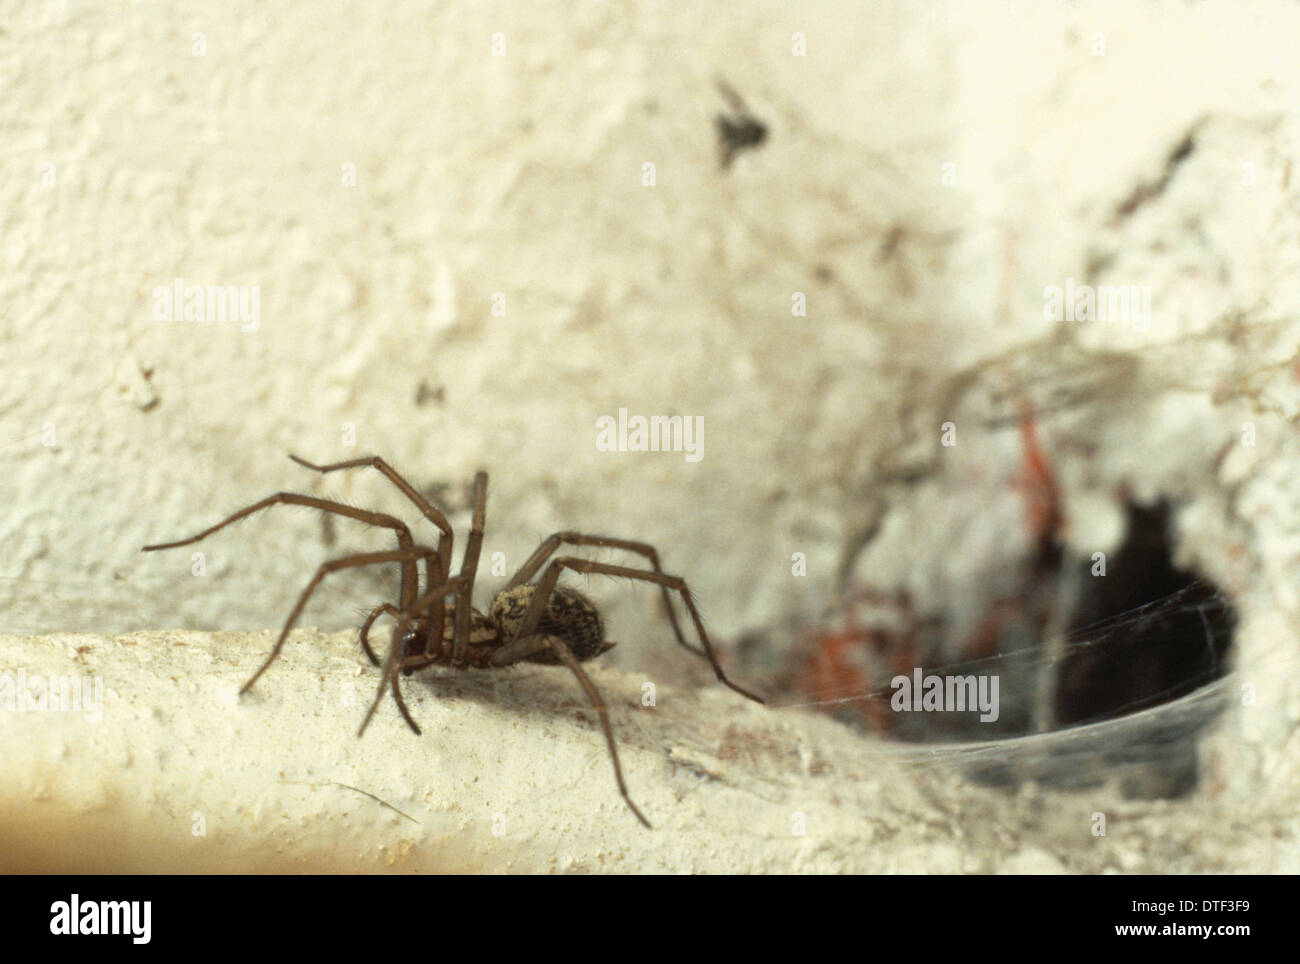 Tegenaria gigantia, casa spider Foto de stock